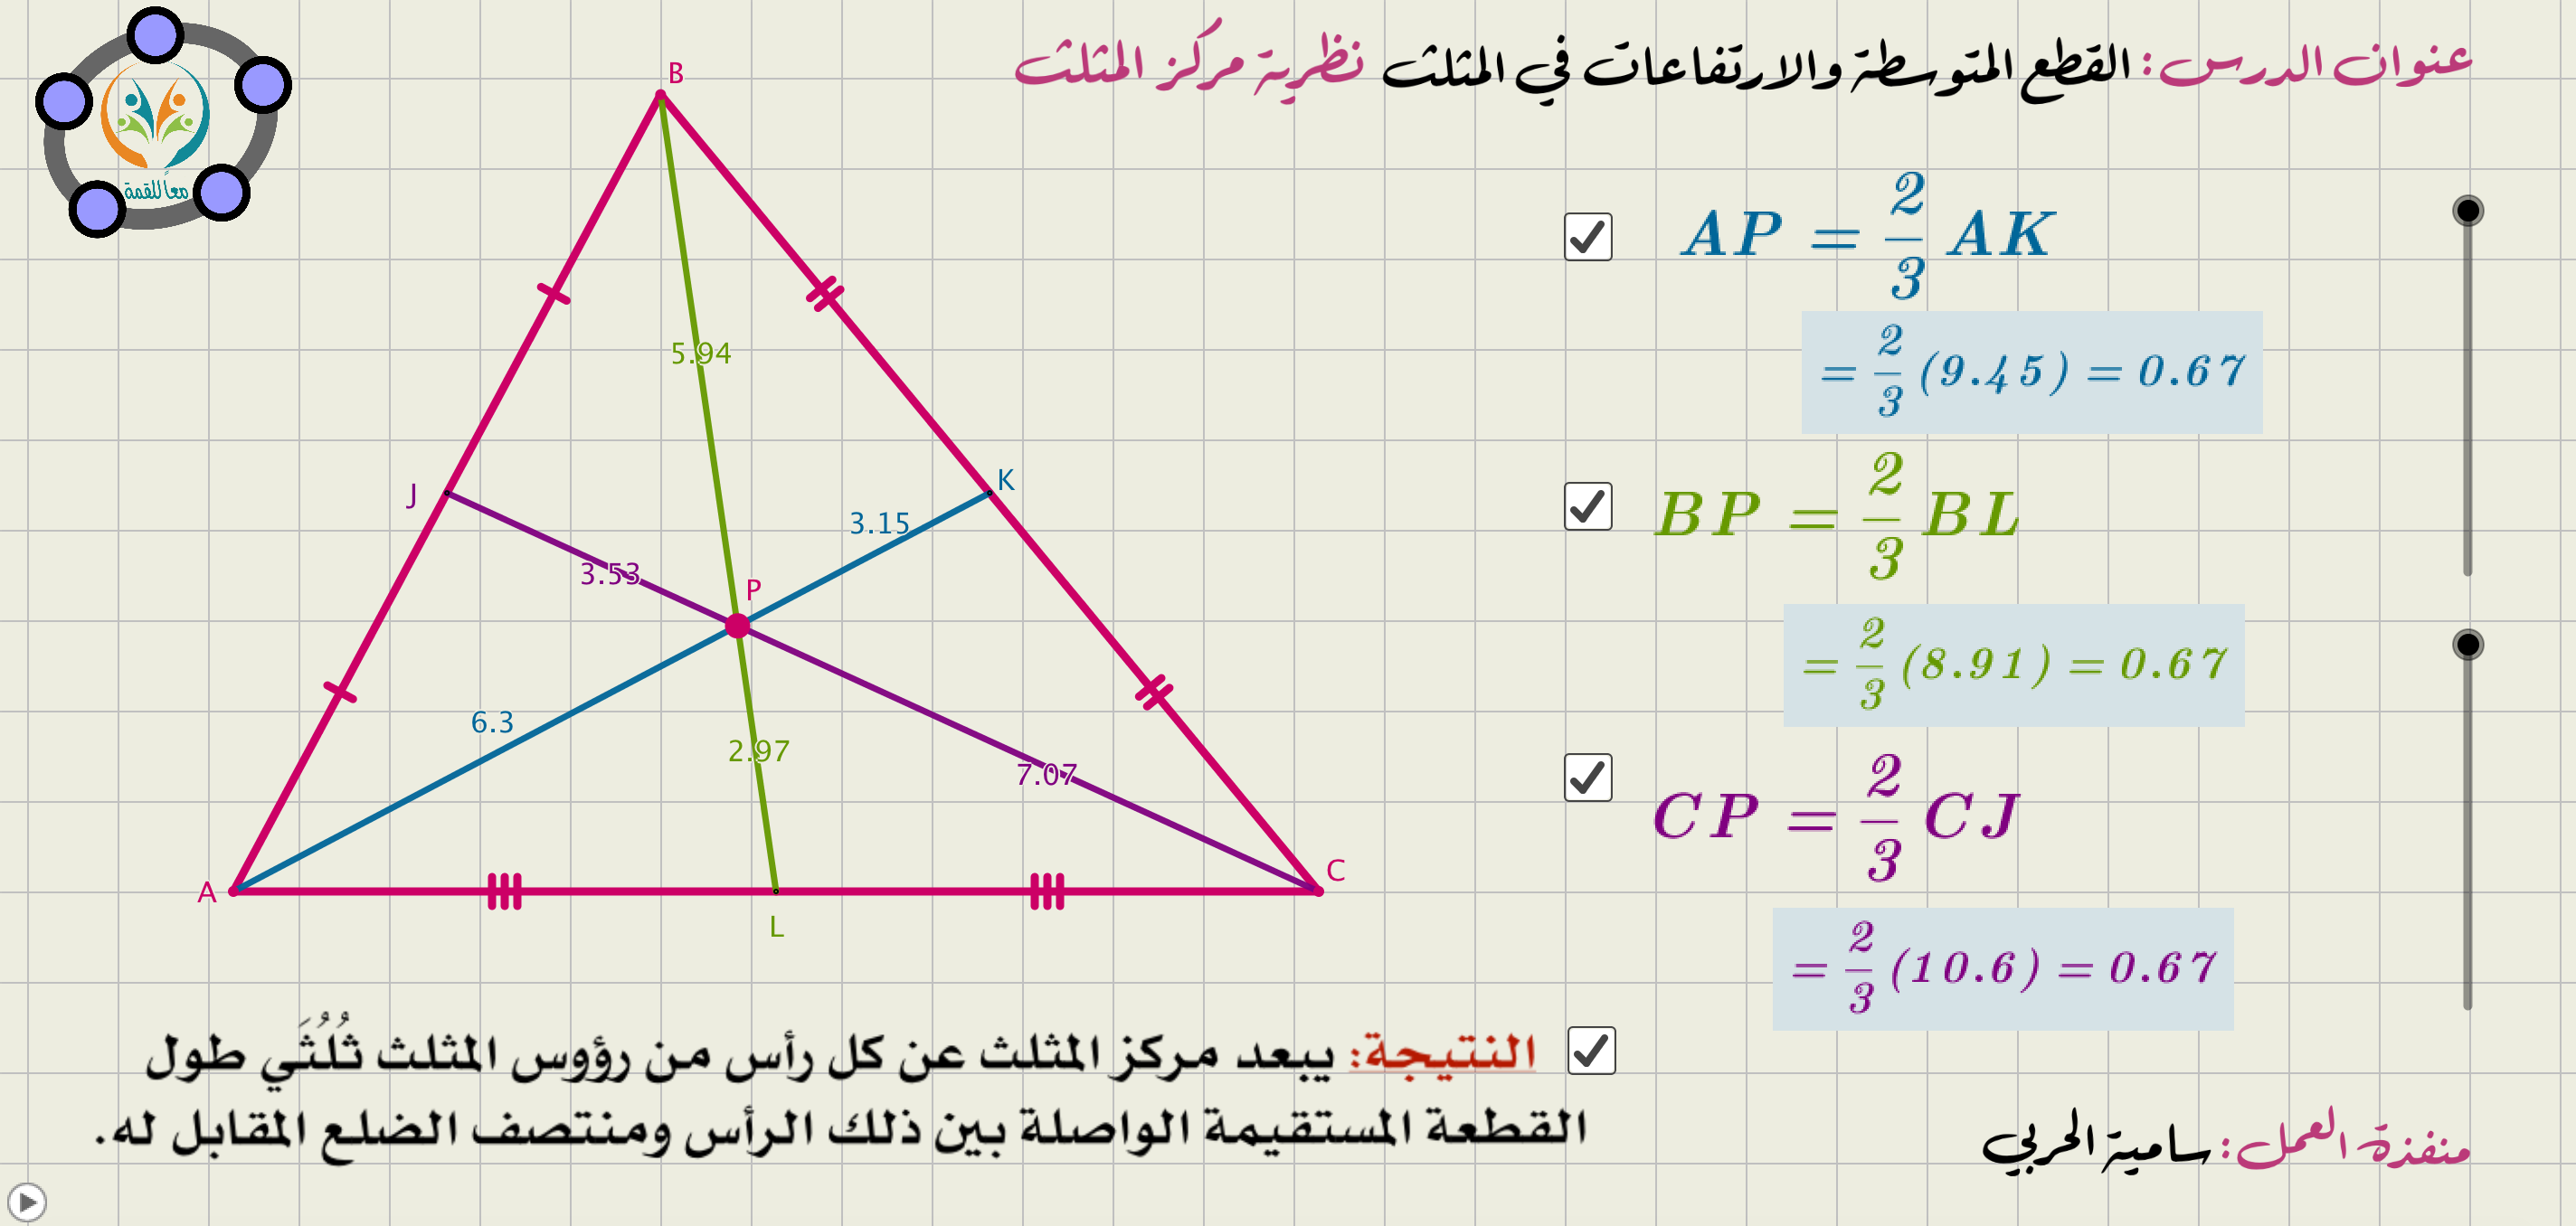 (القطع المتوسطة والارتفاعات في المثلث (نظرية مركز المثلث)